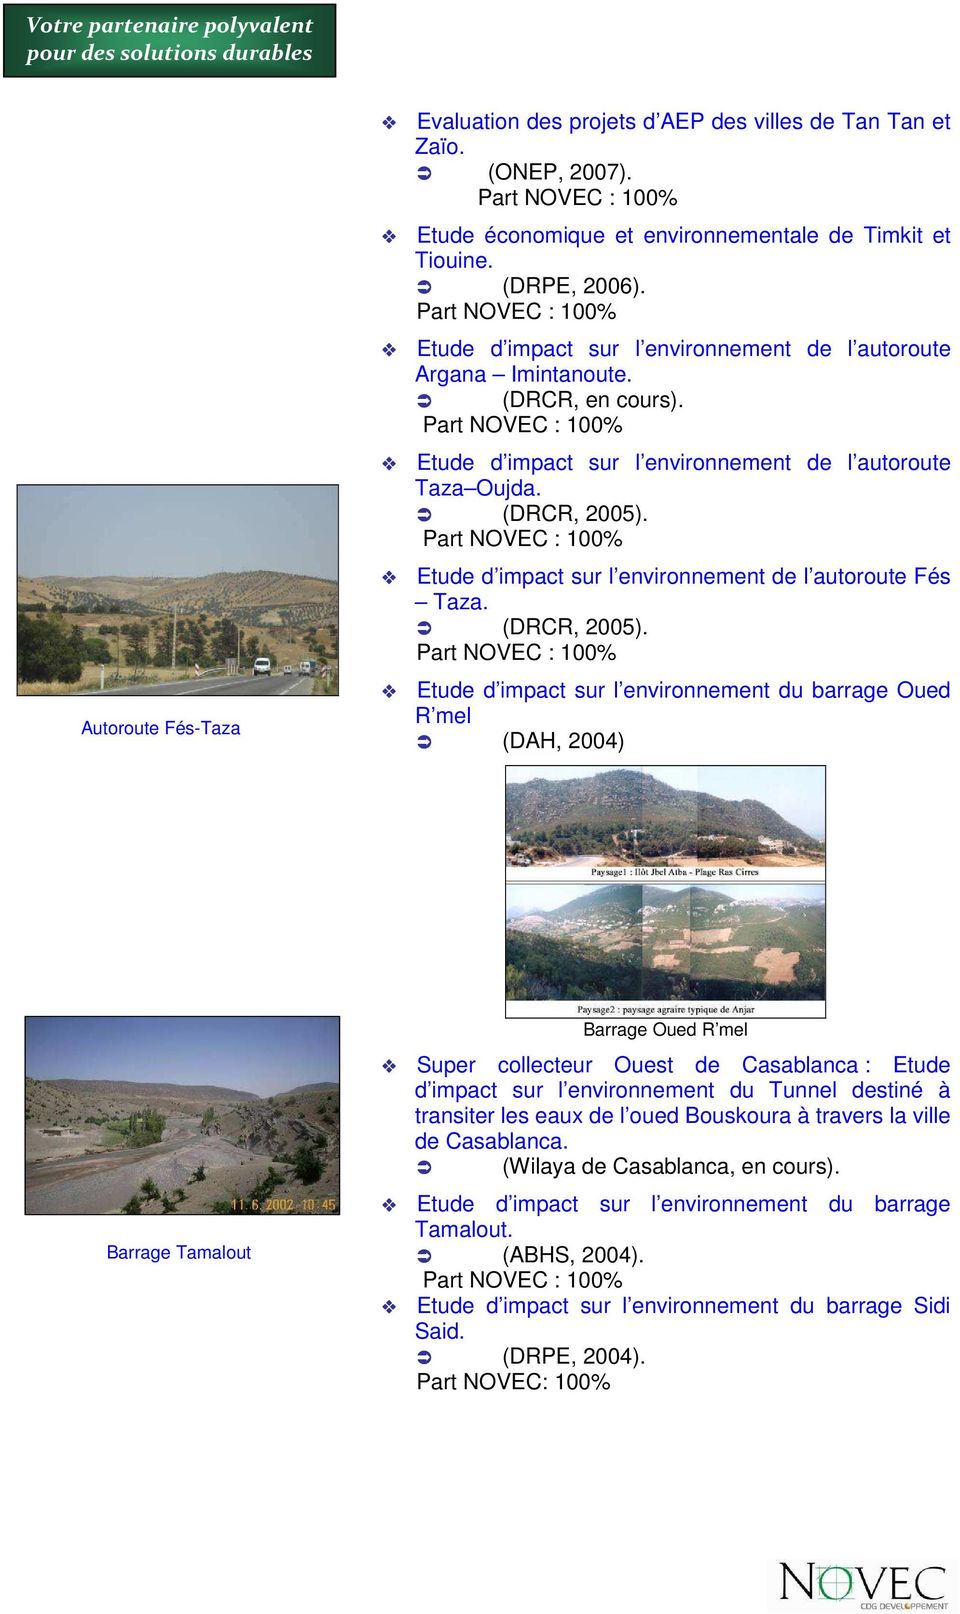 Etude d impact sur l environnement de l autoroute Fés Taza. (DRCR, 2005).